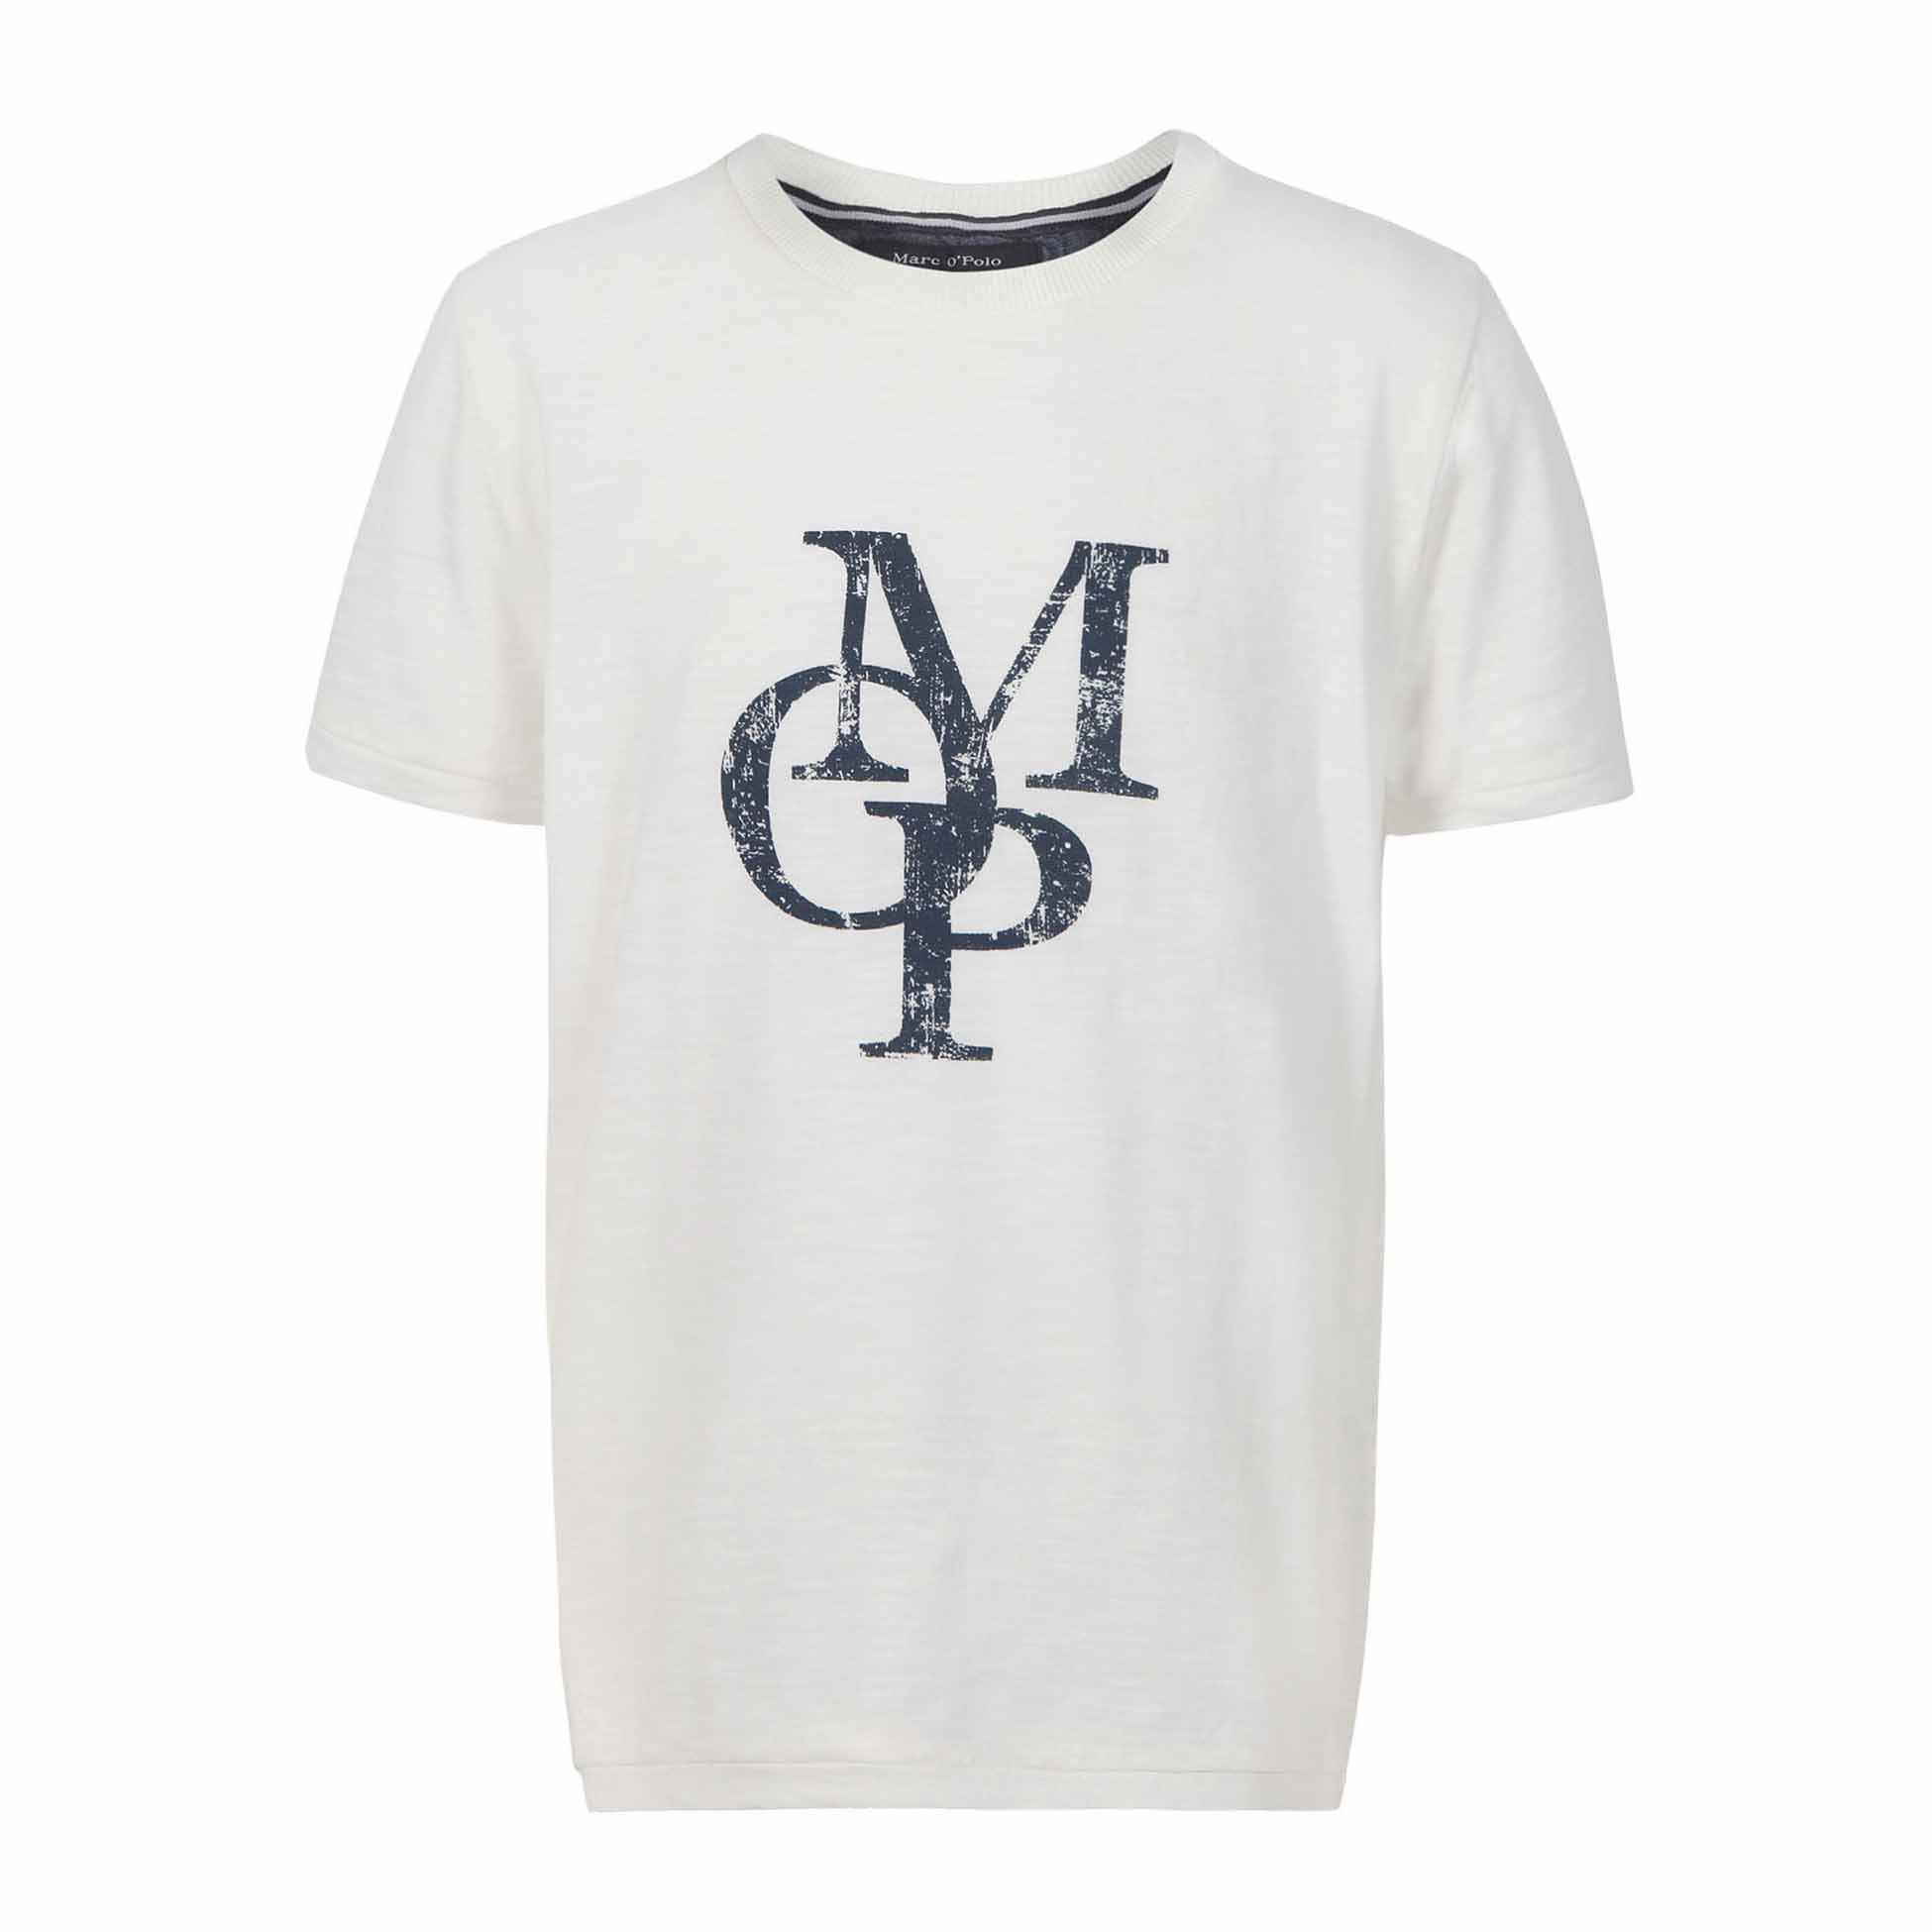 Chłopięcy T-shirt z logo, krótki rękaw, biały, Marc O'Polo